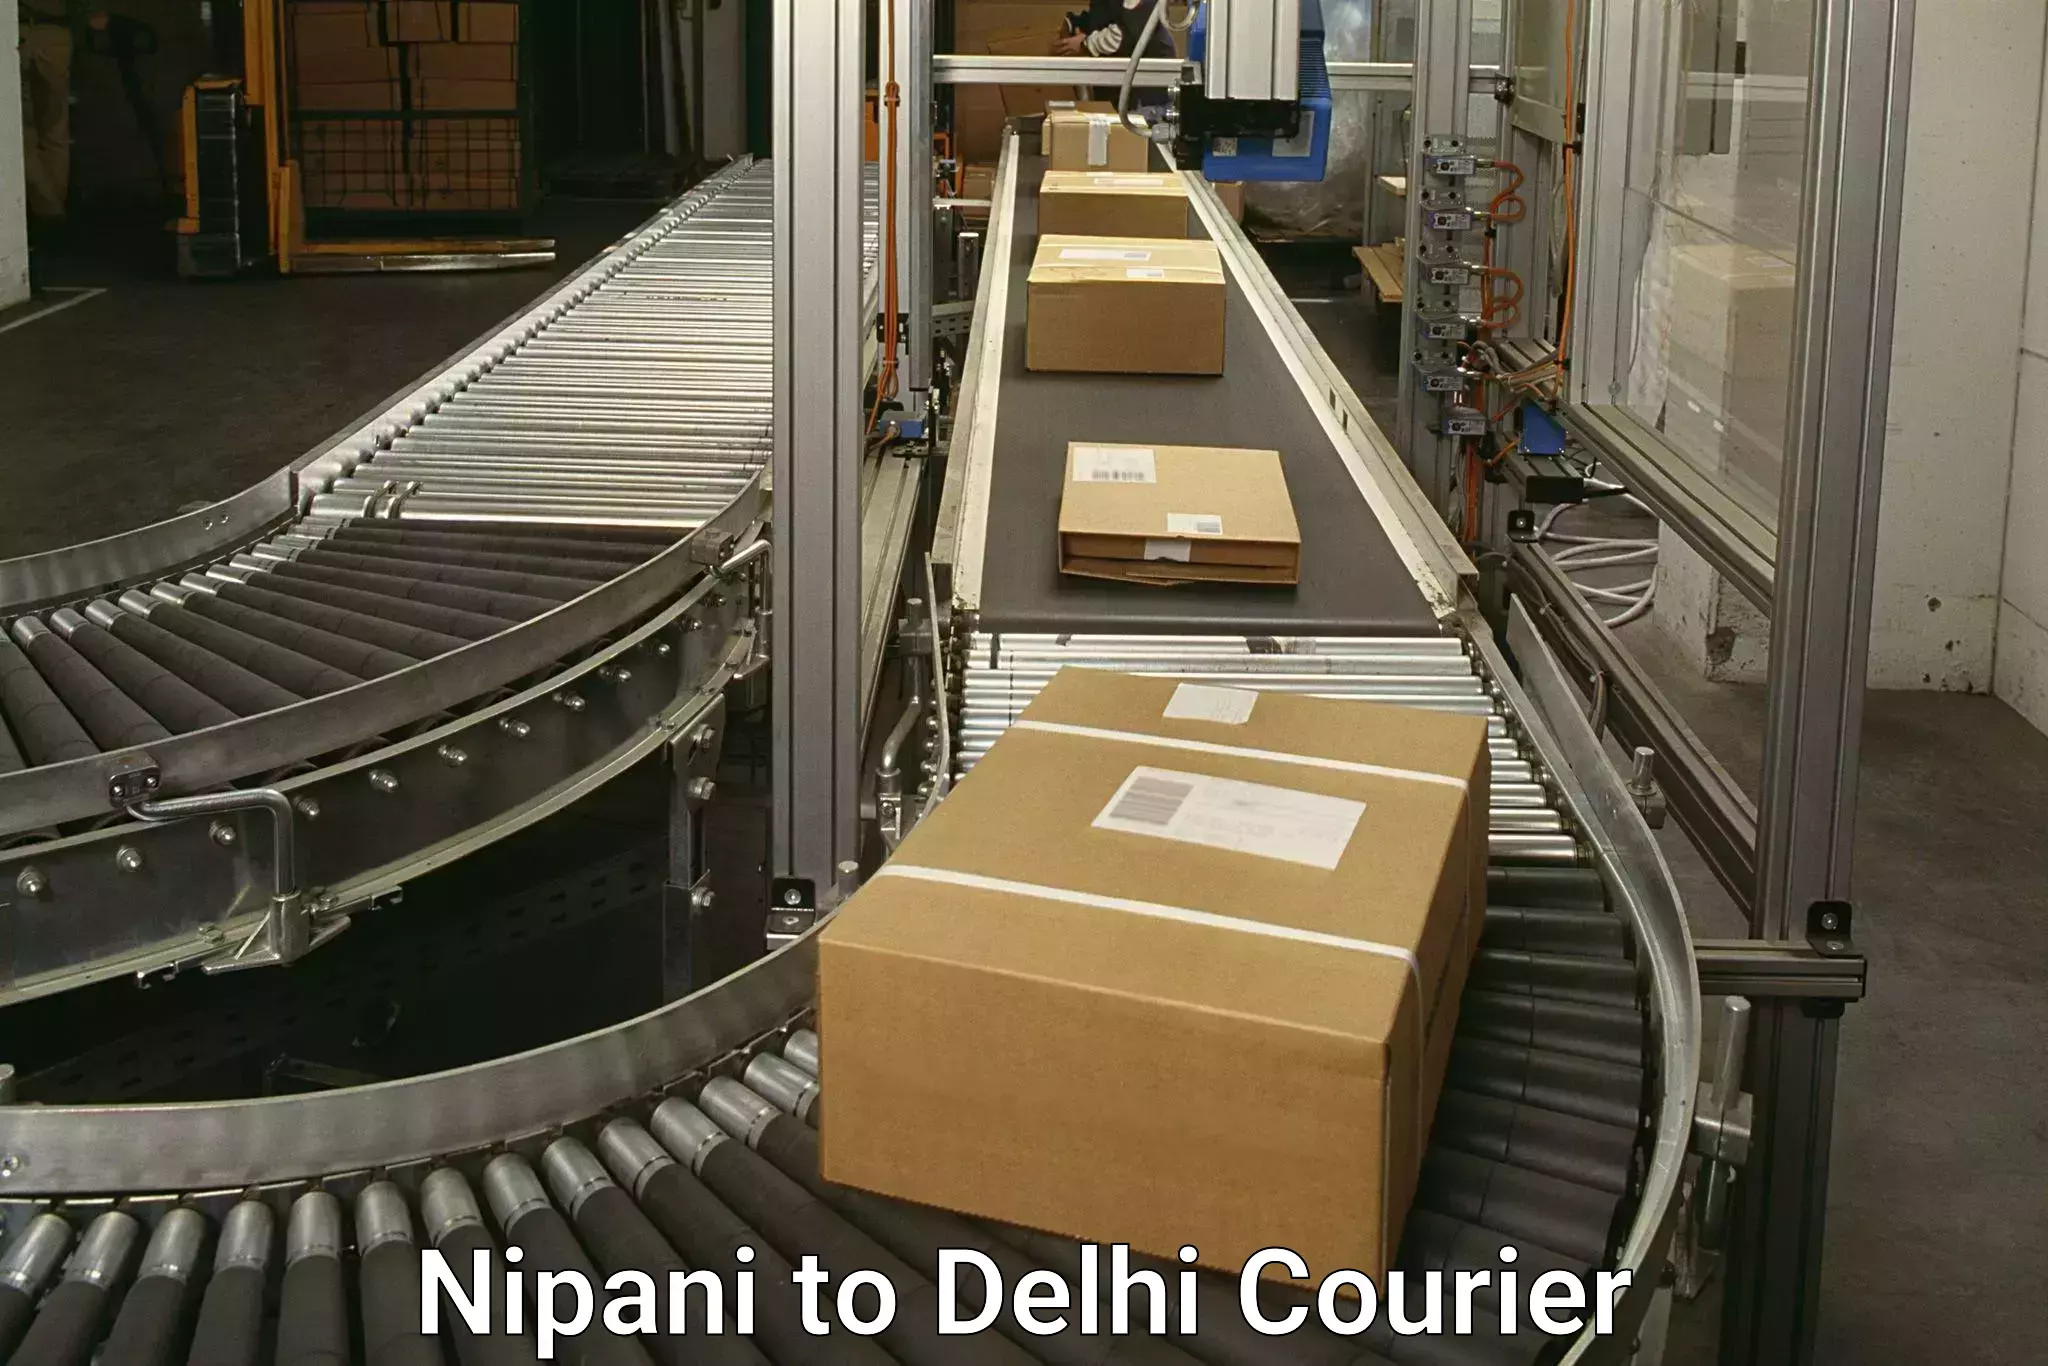 Courier service booking Nipani to Delhi